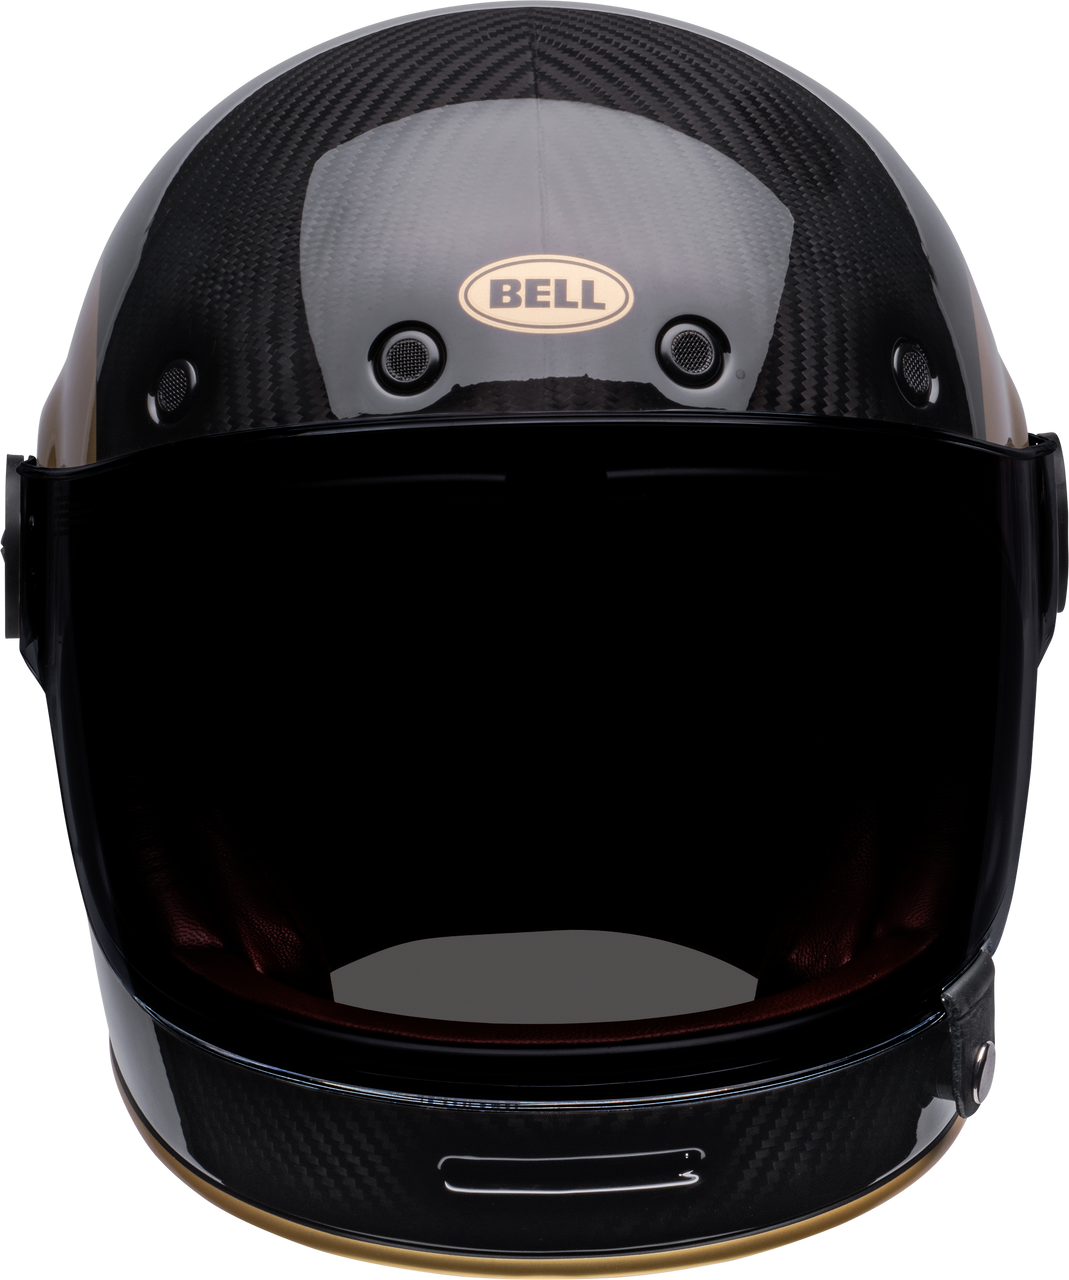 Bell Cruiser 2022 Bullitt Carbon Adult Helmet (TT Black/Gold)